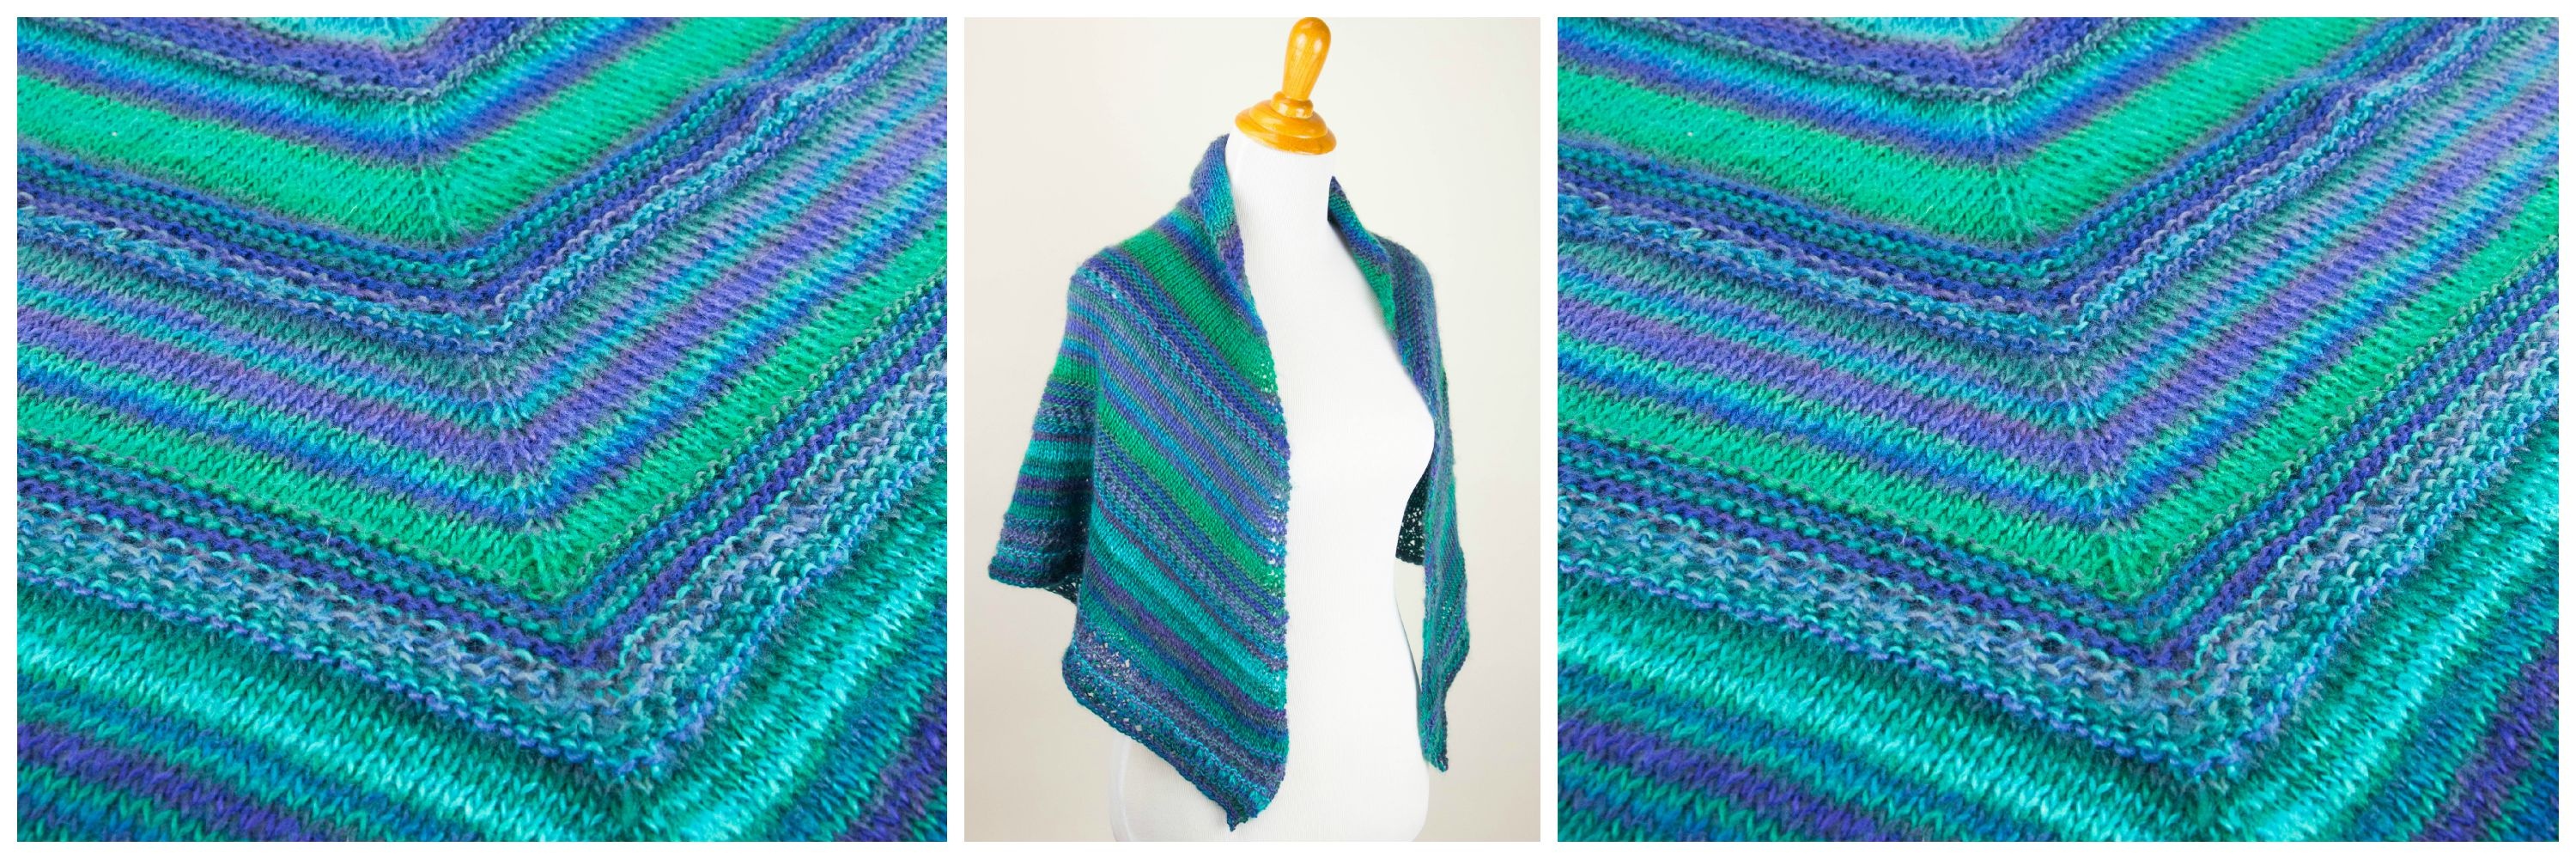 Printable Pattern: Free Knit Prayer Shawl Pattern - Stitch And Unwind - Free Printable Patterns